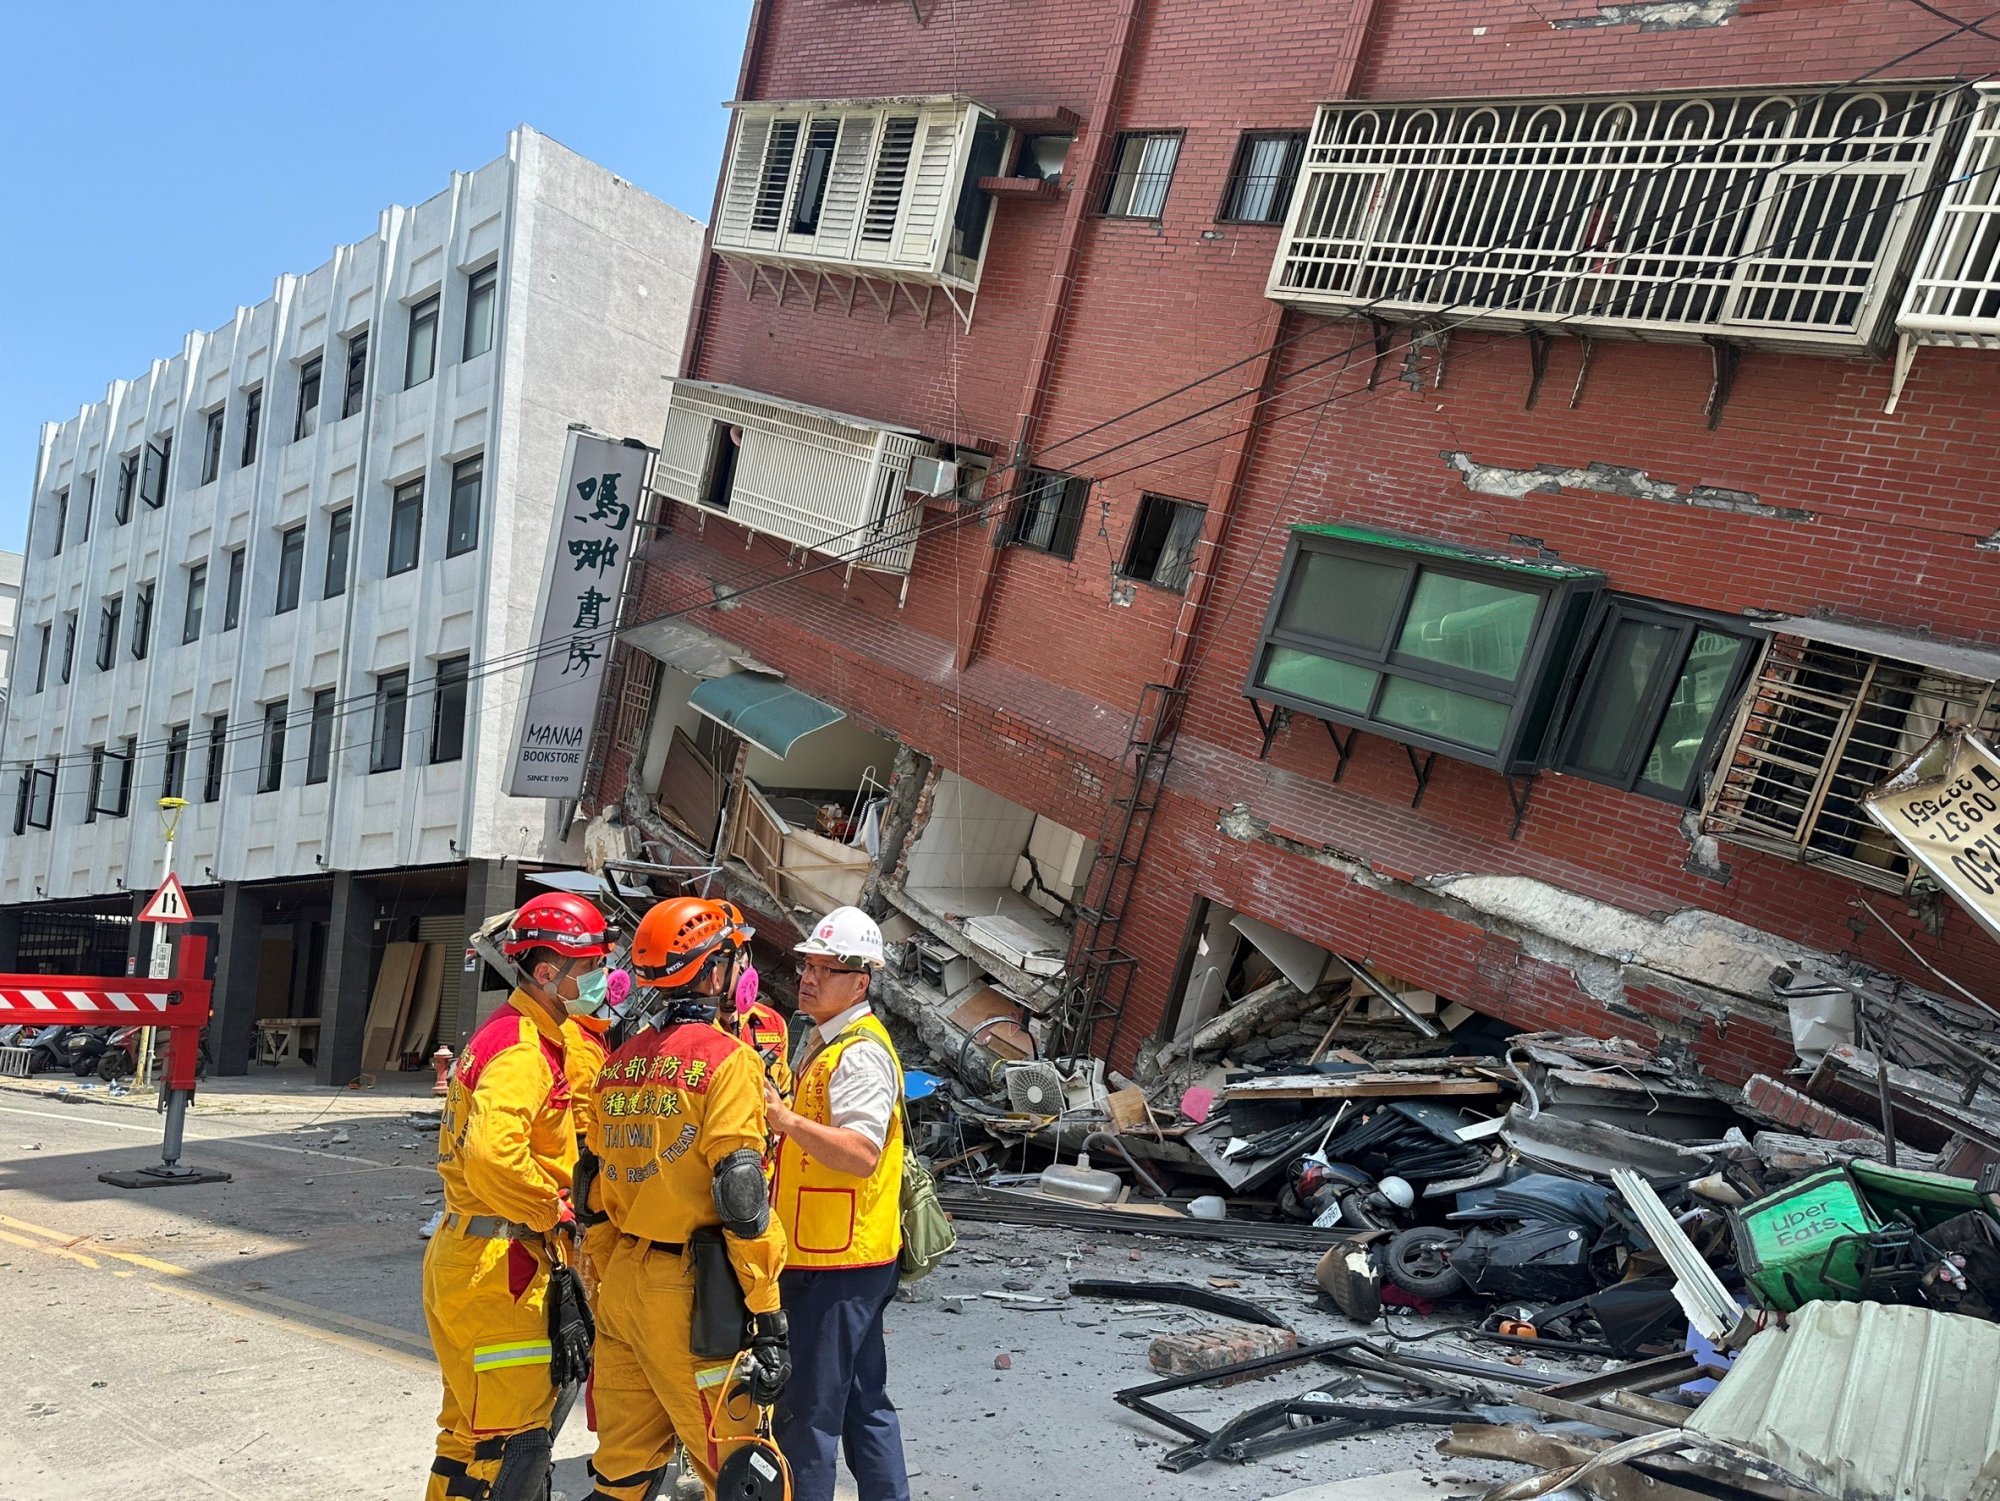 Ταϊβάν: Έλληνας κάτοικος περιγράφει τη στιγμή του σεισμού - «Εάν γινόταν αύριο, τα πράγματα θα ήταν χειρότερα»